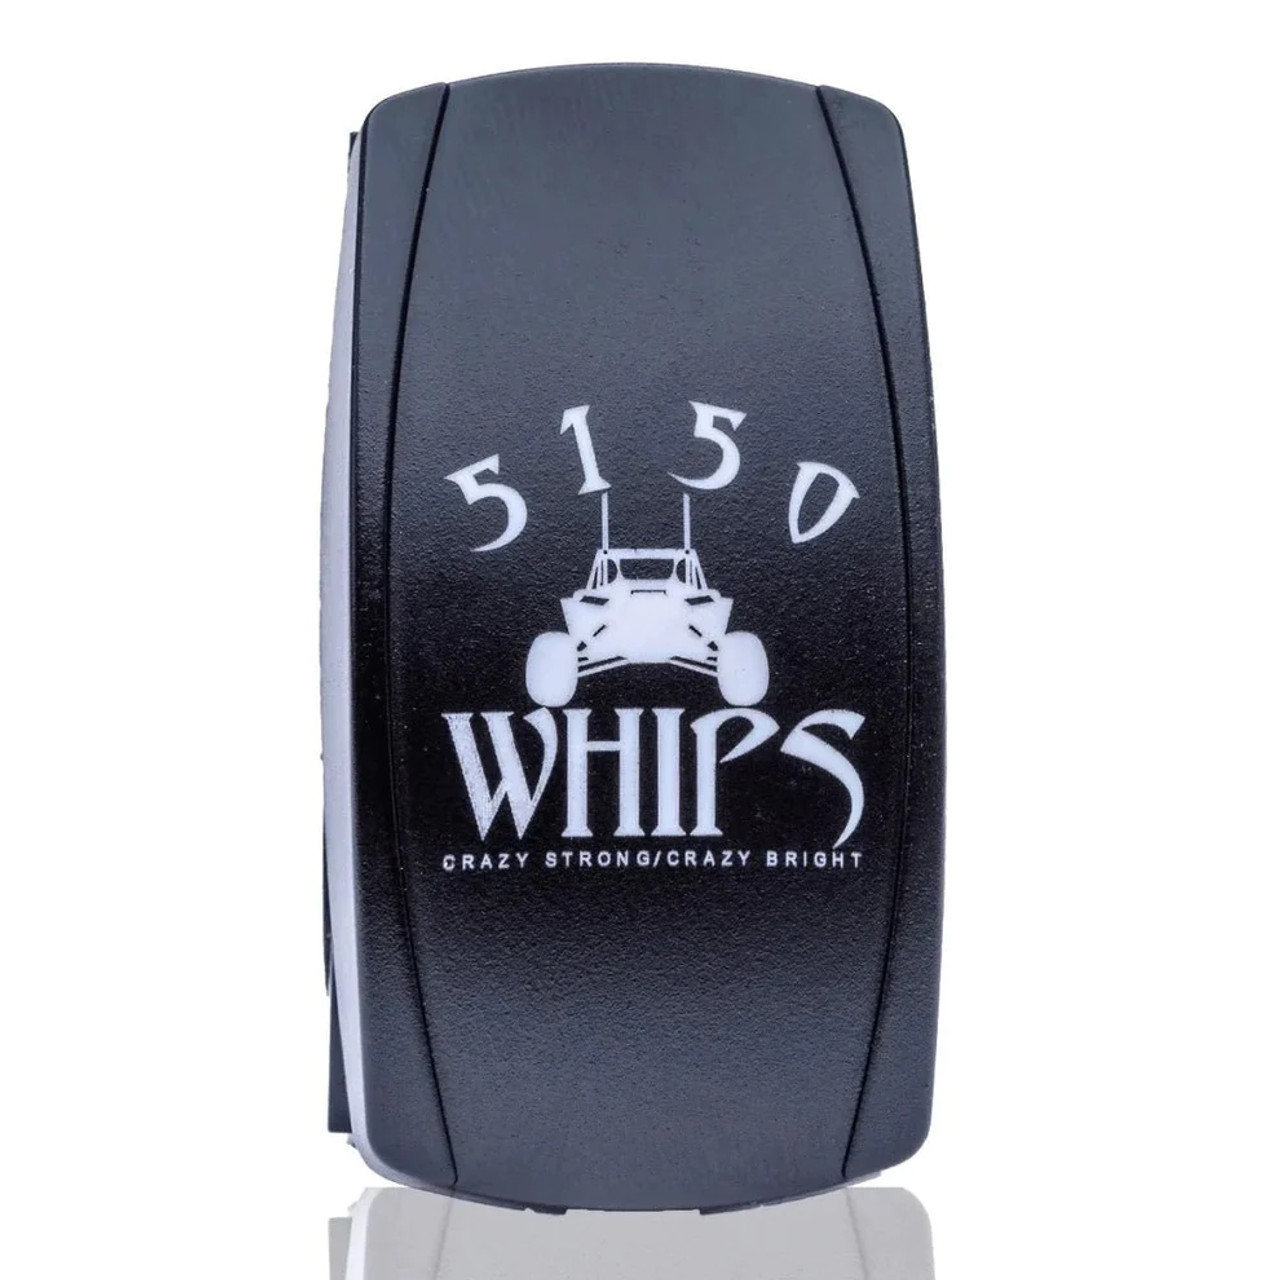 UTV Side X Side 5150 Whips Waterproof Rocker Switch